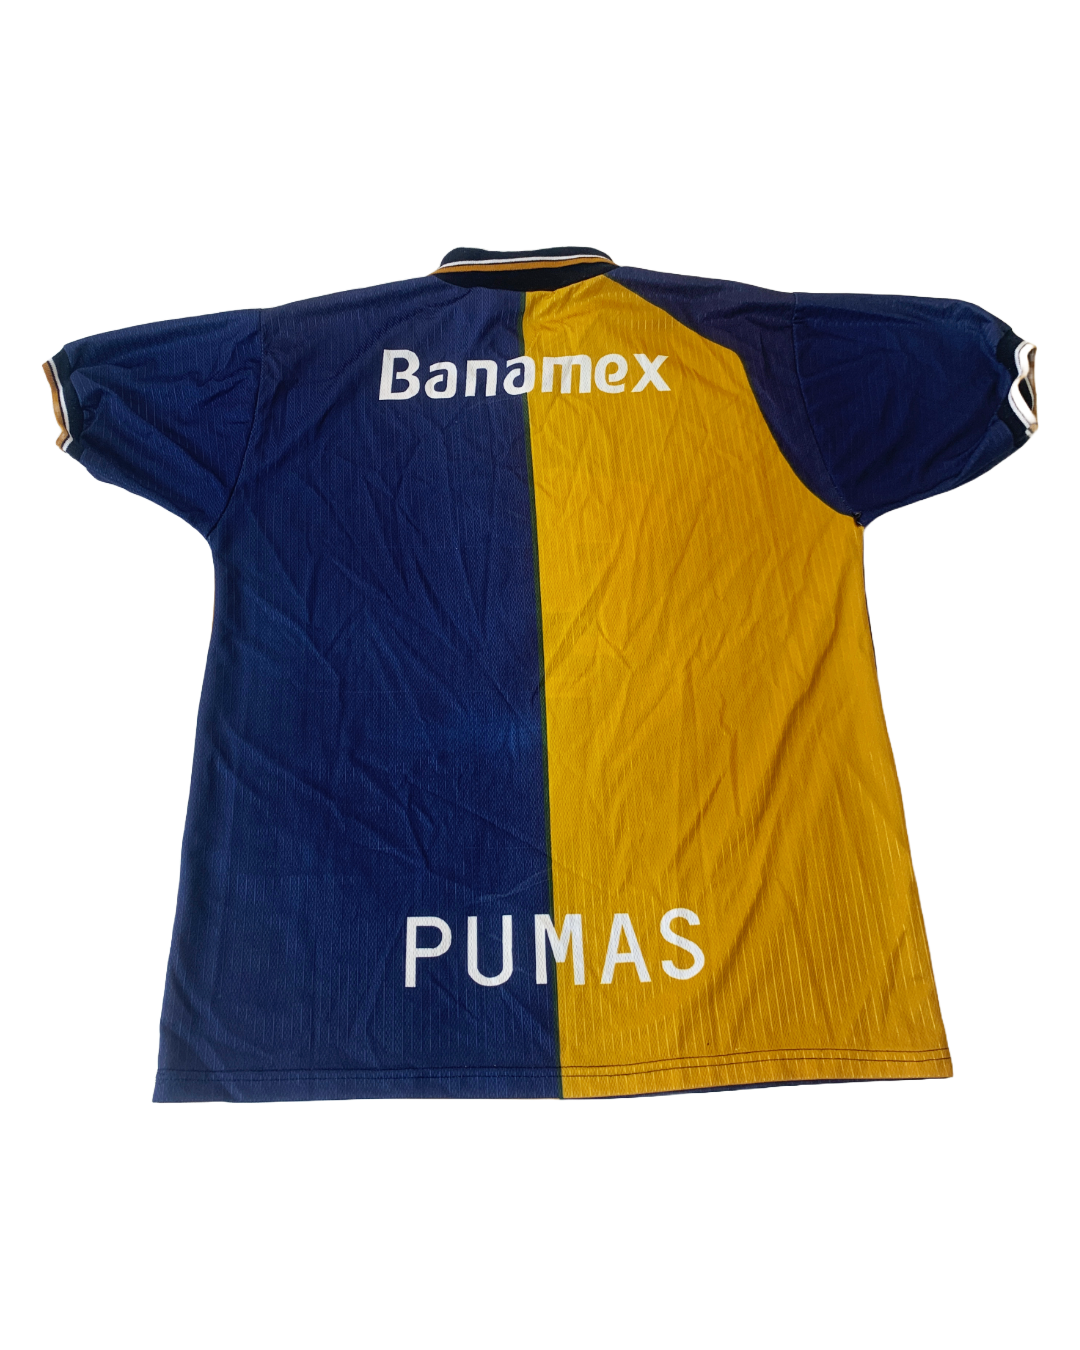 Pumas Vintage Jersey - XL